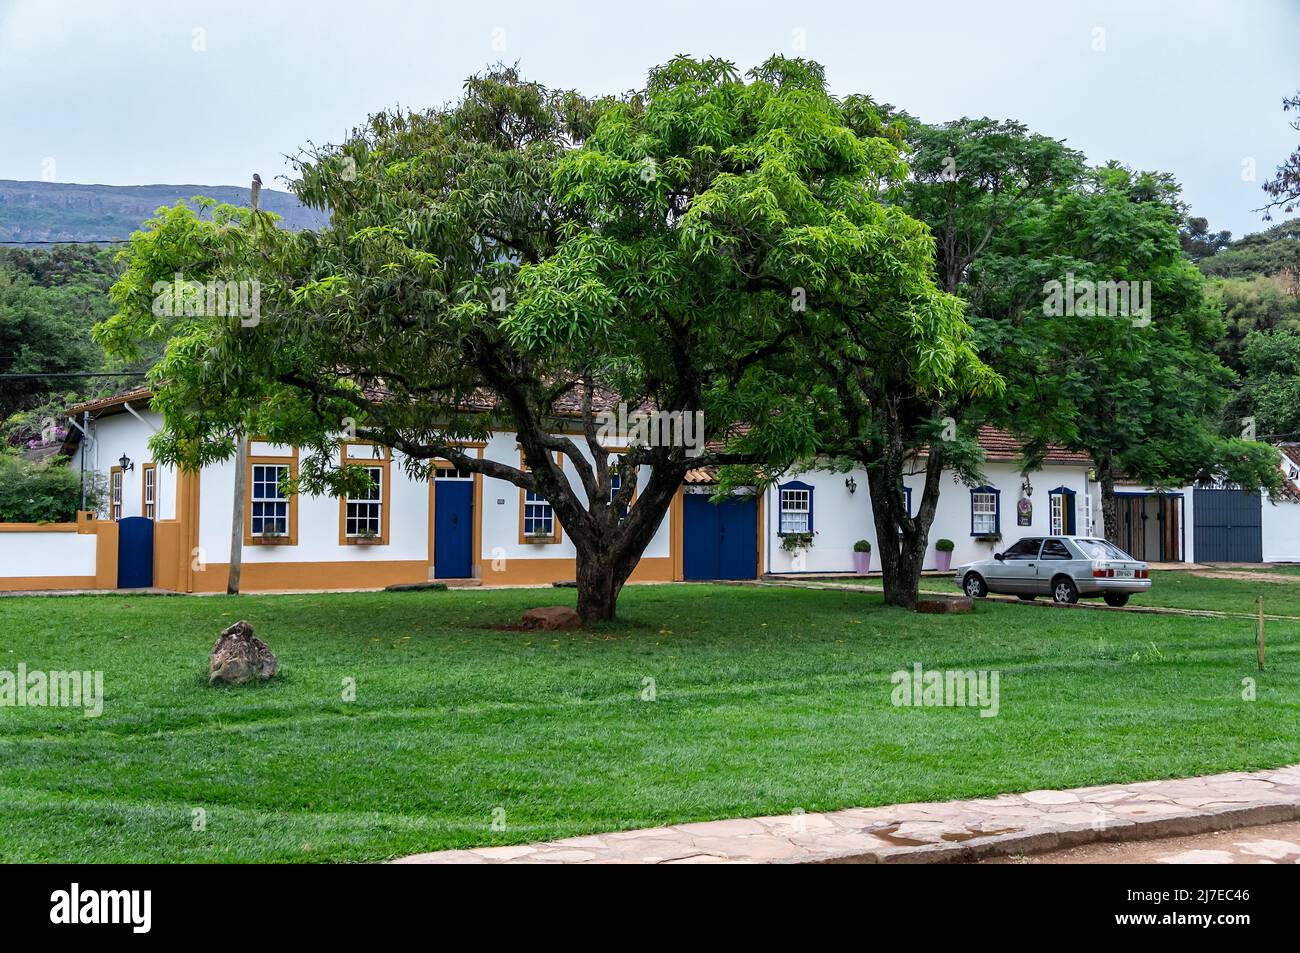 Grands arbres frais et verts au milieu d'un champ d'herbe et en face de maisons coloniales situées dans la rue Silvio Vasconcelos dans le centre historique. Banque D'Images